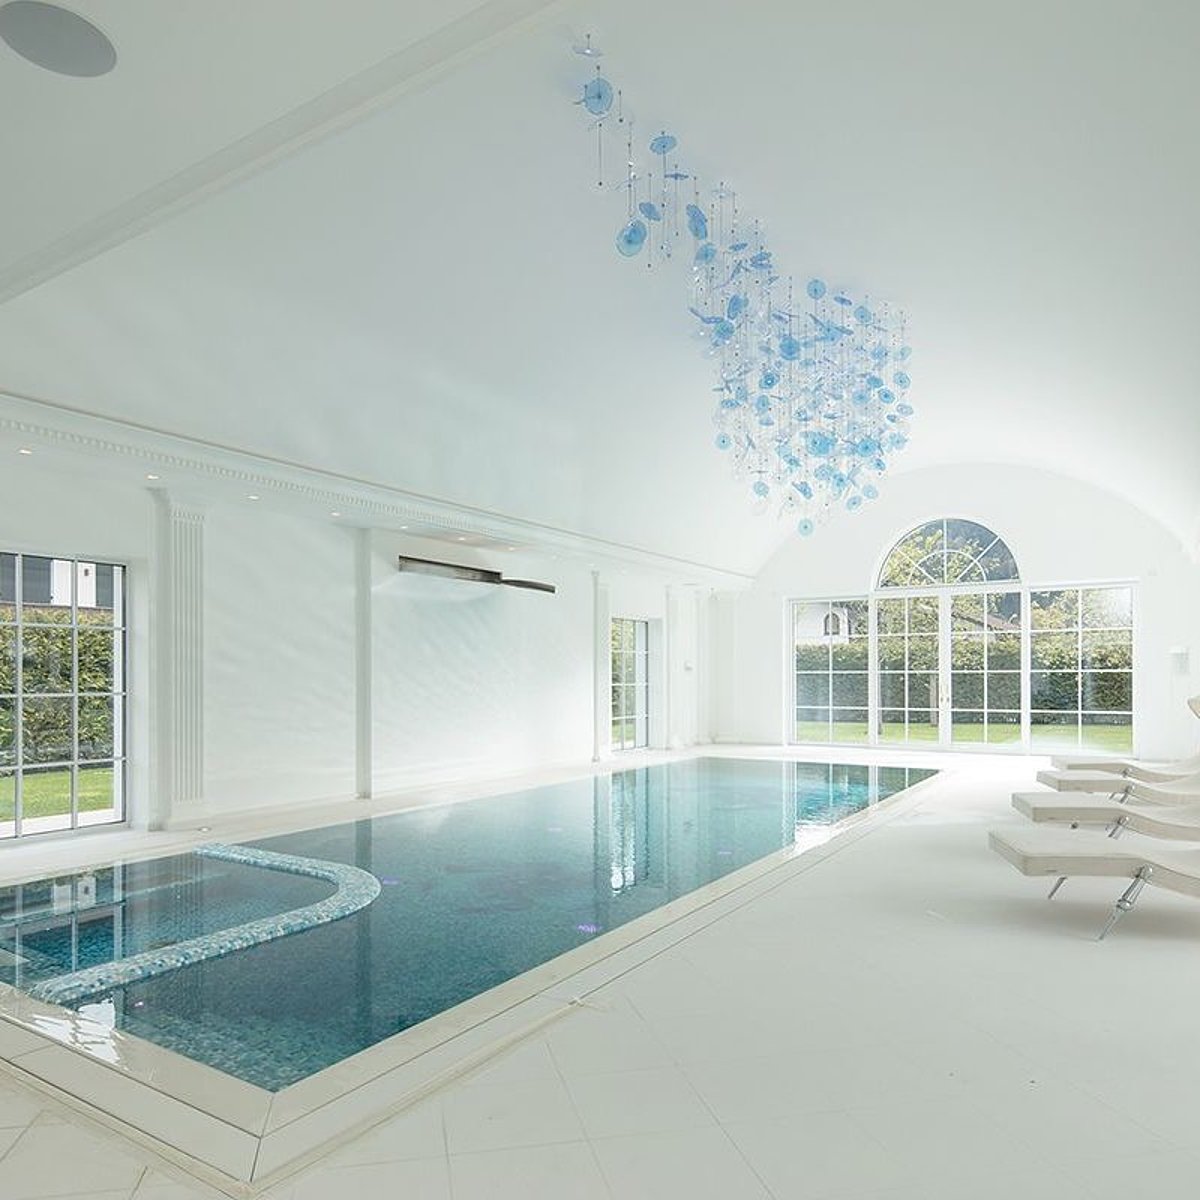 Zicht op een binnenruimte met gewelfd plafond en een zwembad met turkooiskleurige mozaïeksteentjes.